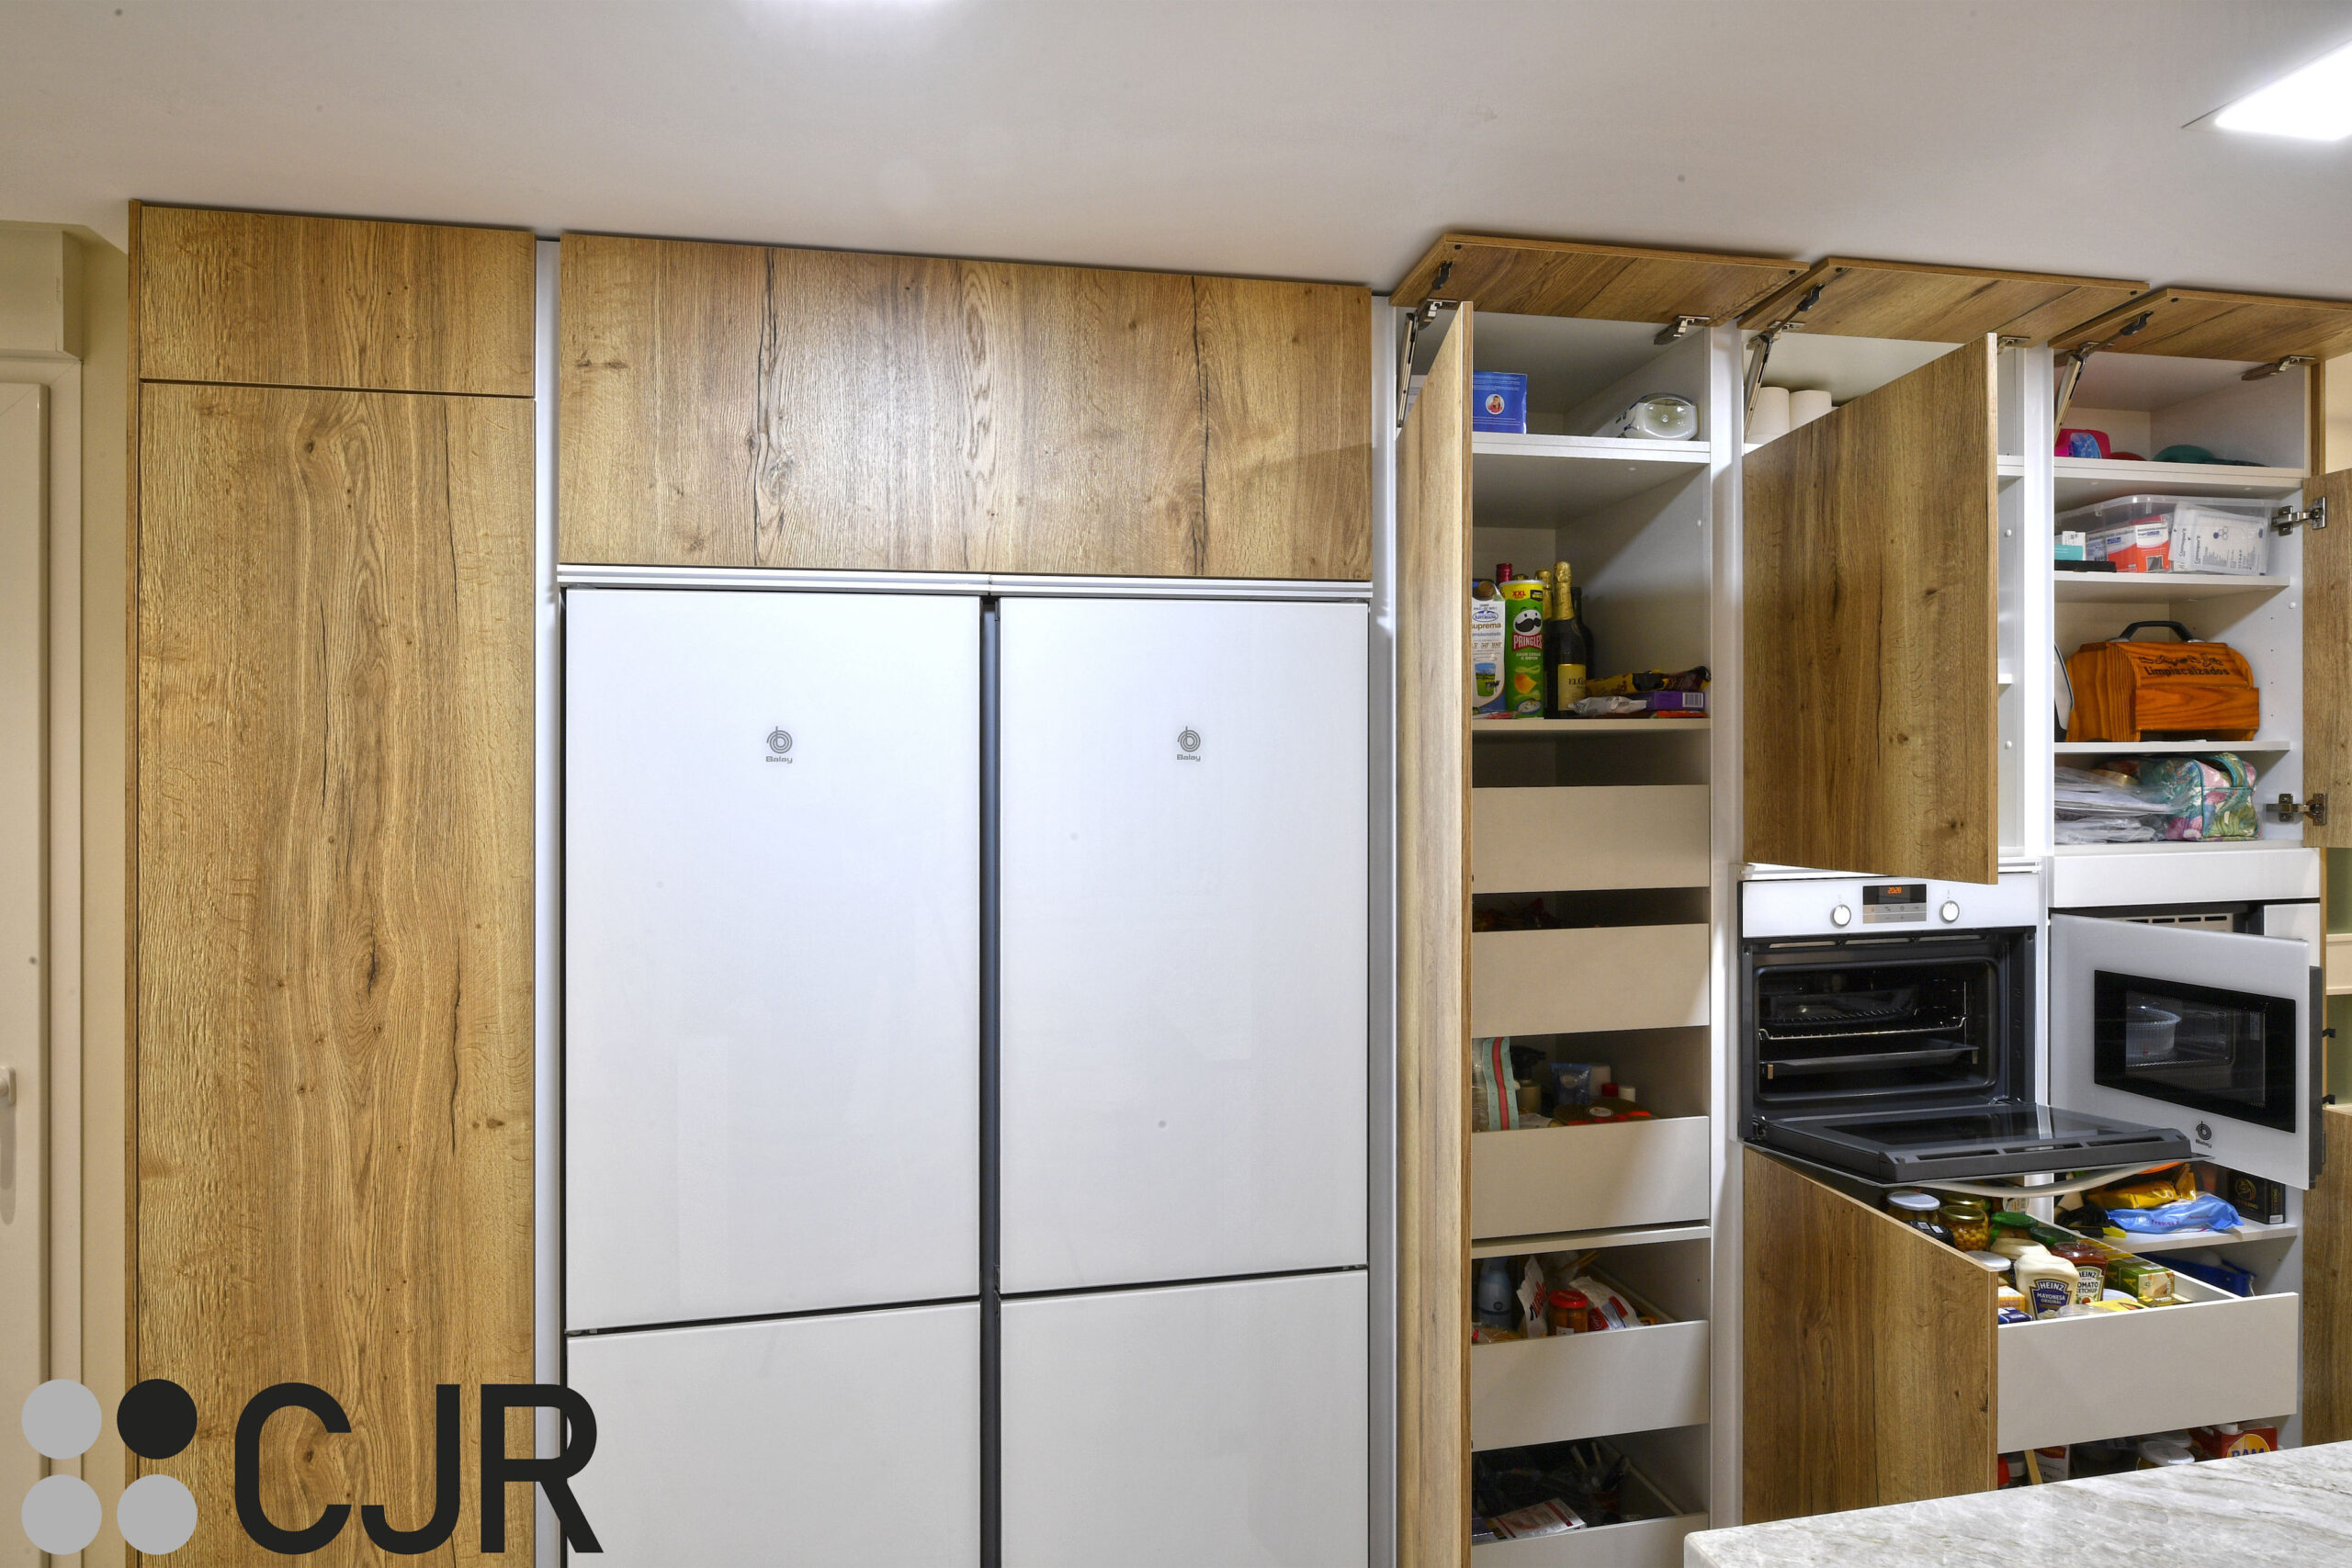 torres de cocina amplias en madera con el interior en blanco cocinas cjr